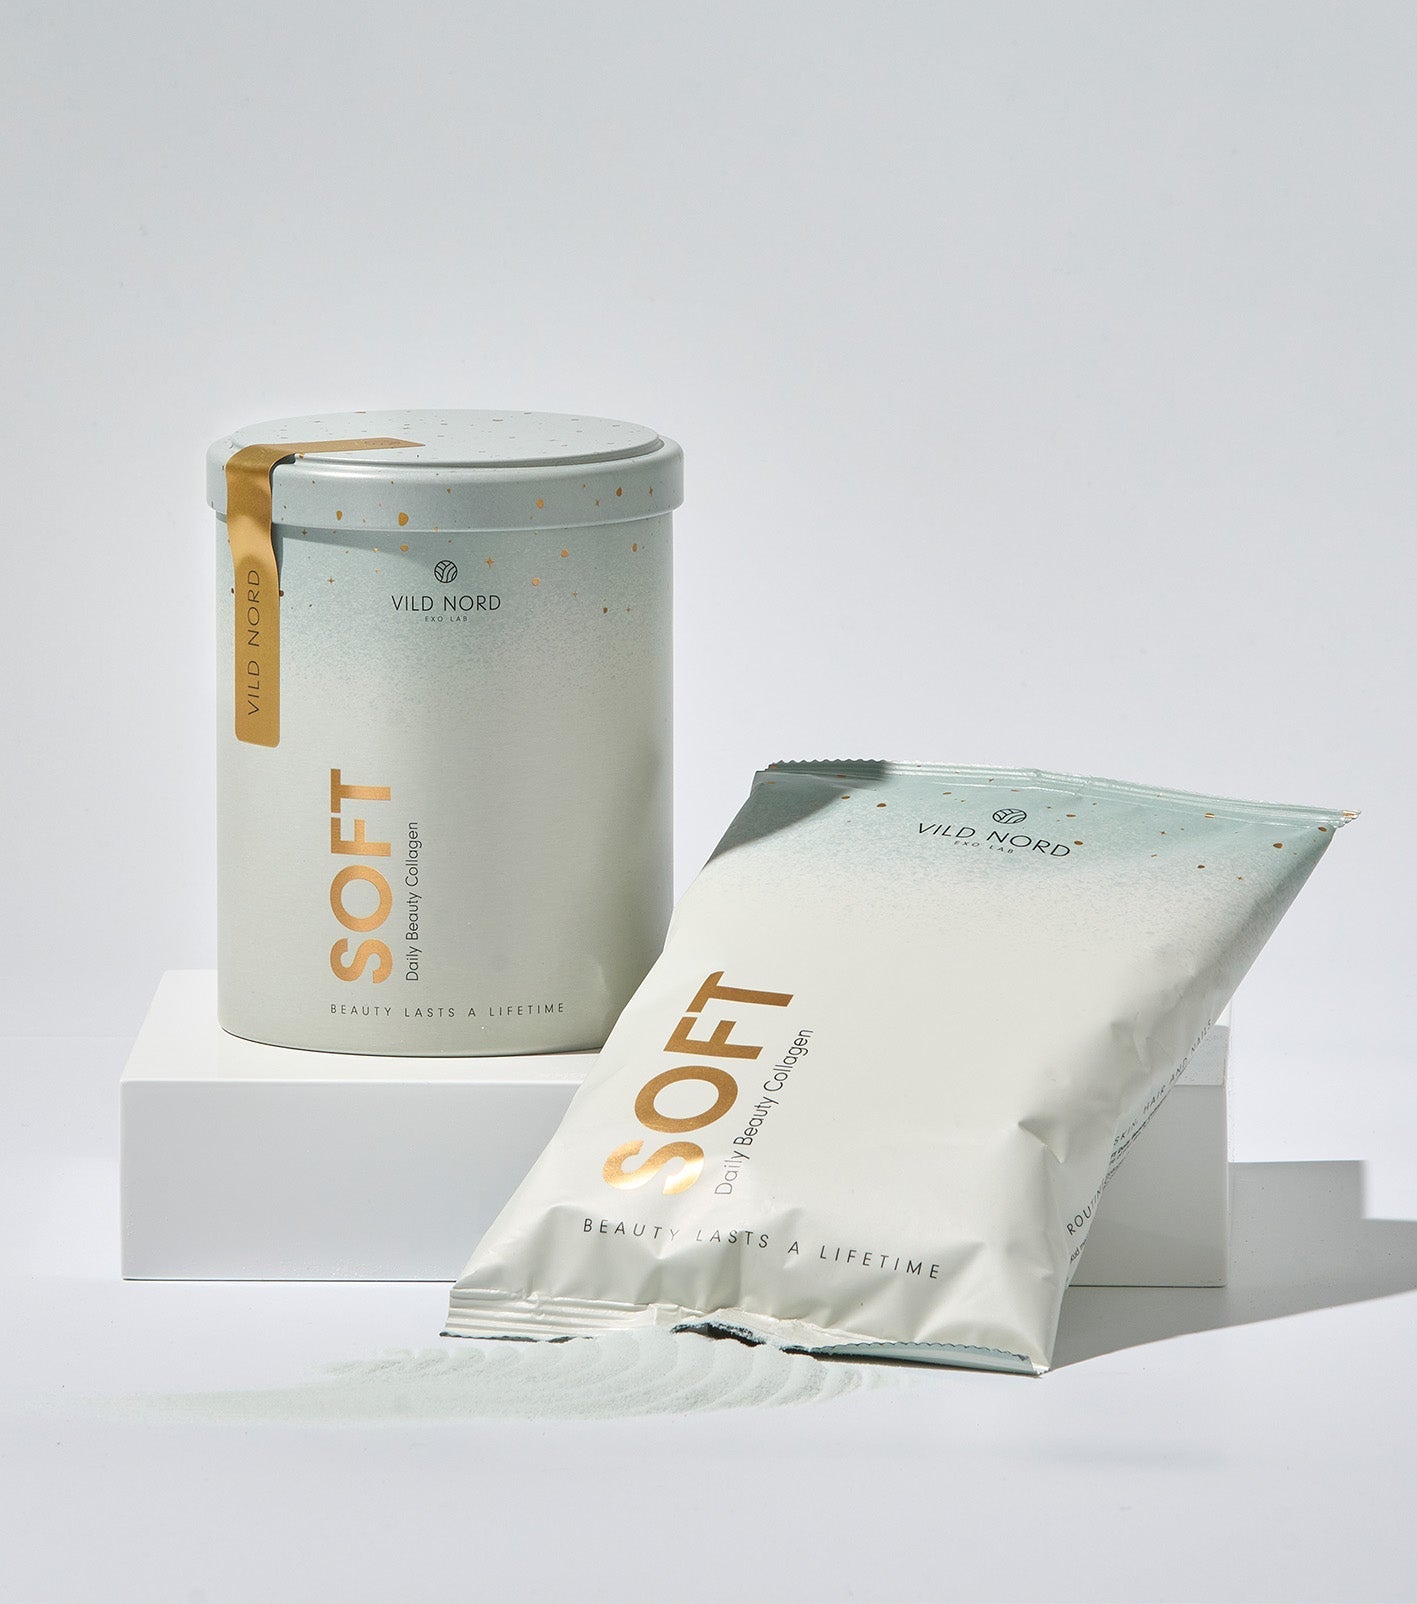 SOFT - Vild Nord - collagen pulver - kollagen tilskud - marine collagen med vitamin C og zink.
Vild Nord Collagen